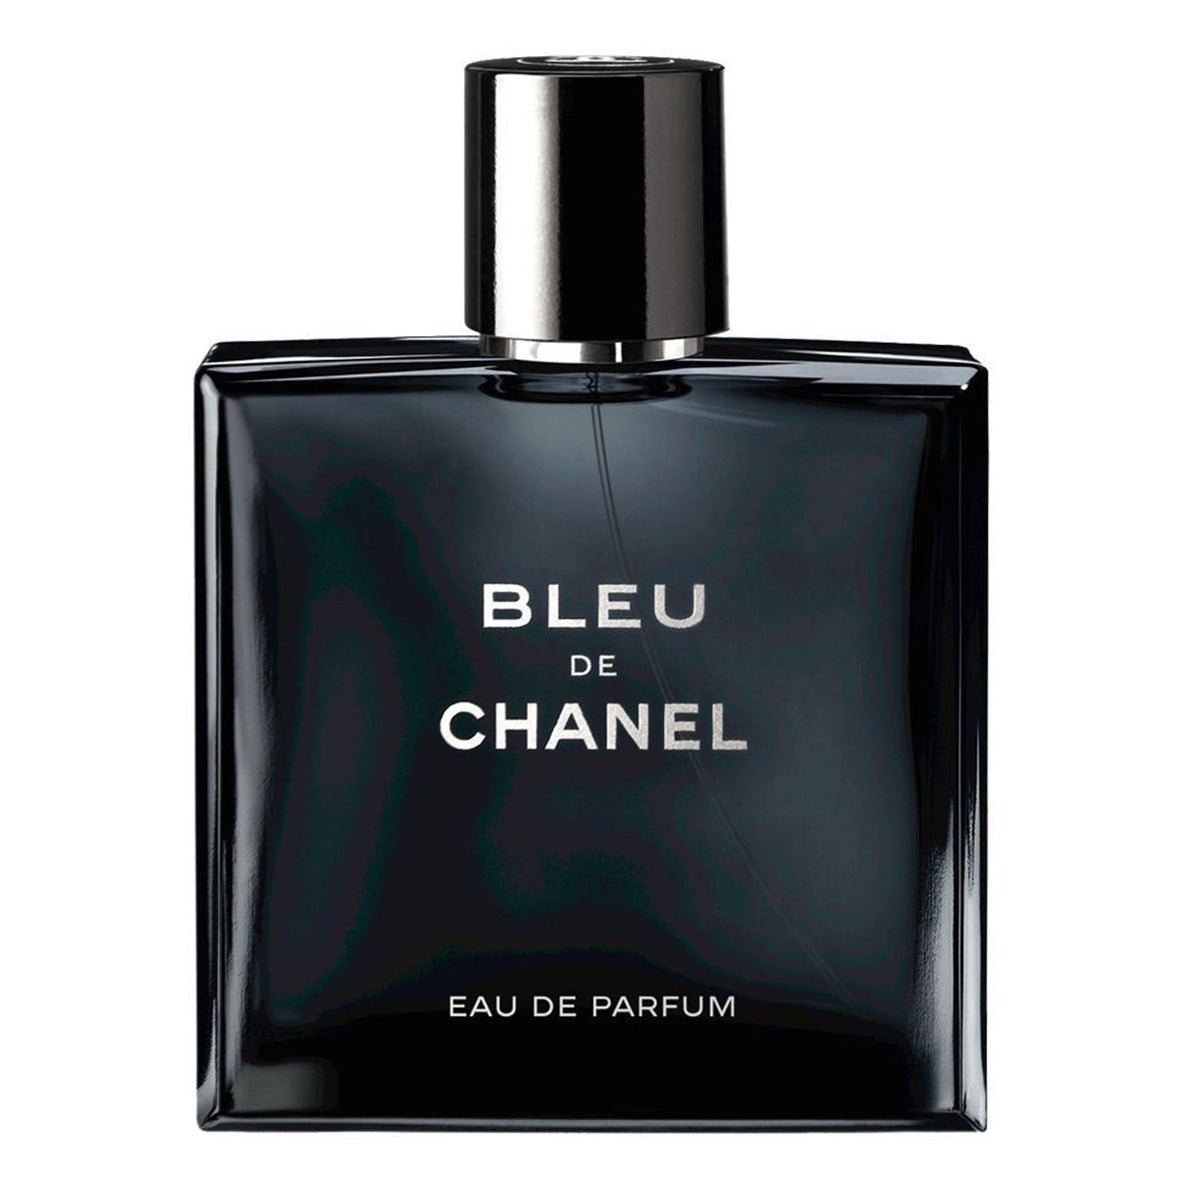 Chanel Bleu De Chanel Pour Homme Perfume Edp For Men 150Ml - AllurebeautypkChanel Bleu De Chanel Pour Homme Perfume Edp For Men 150Ml